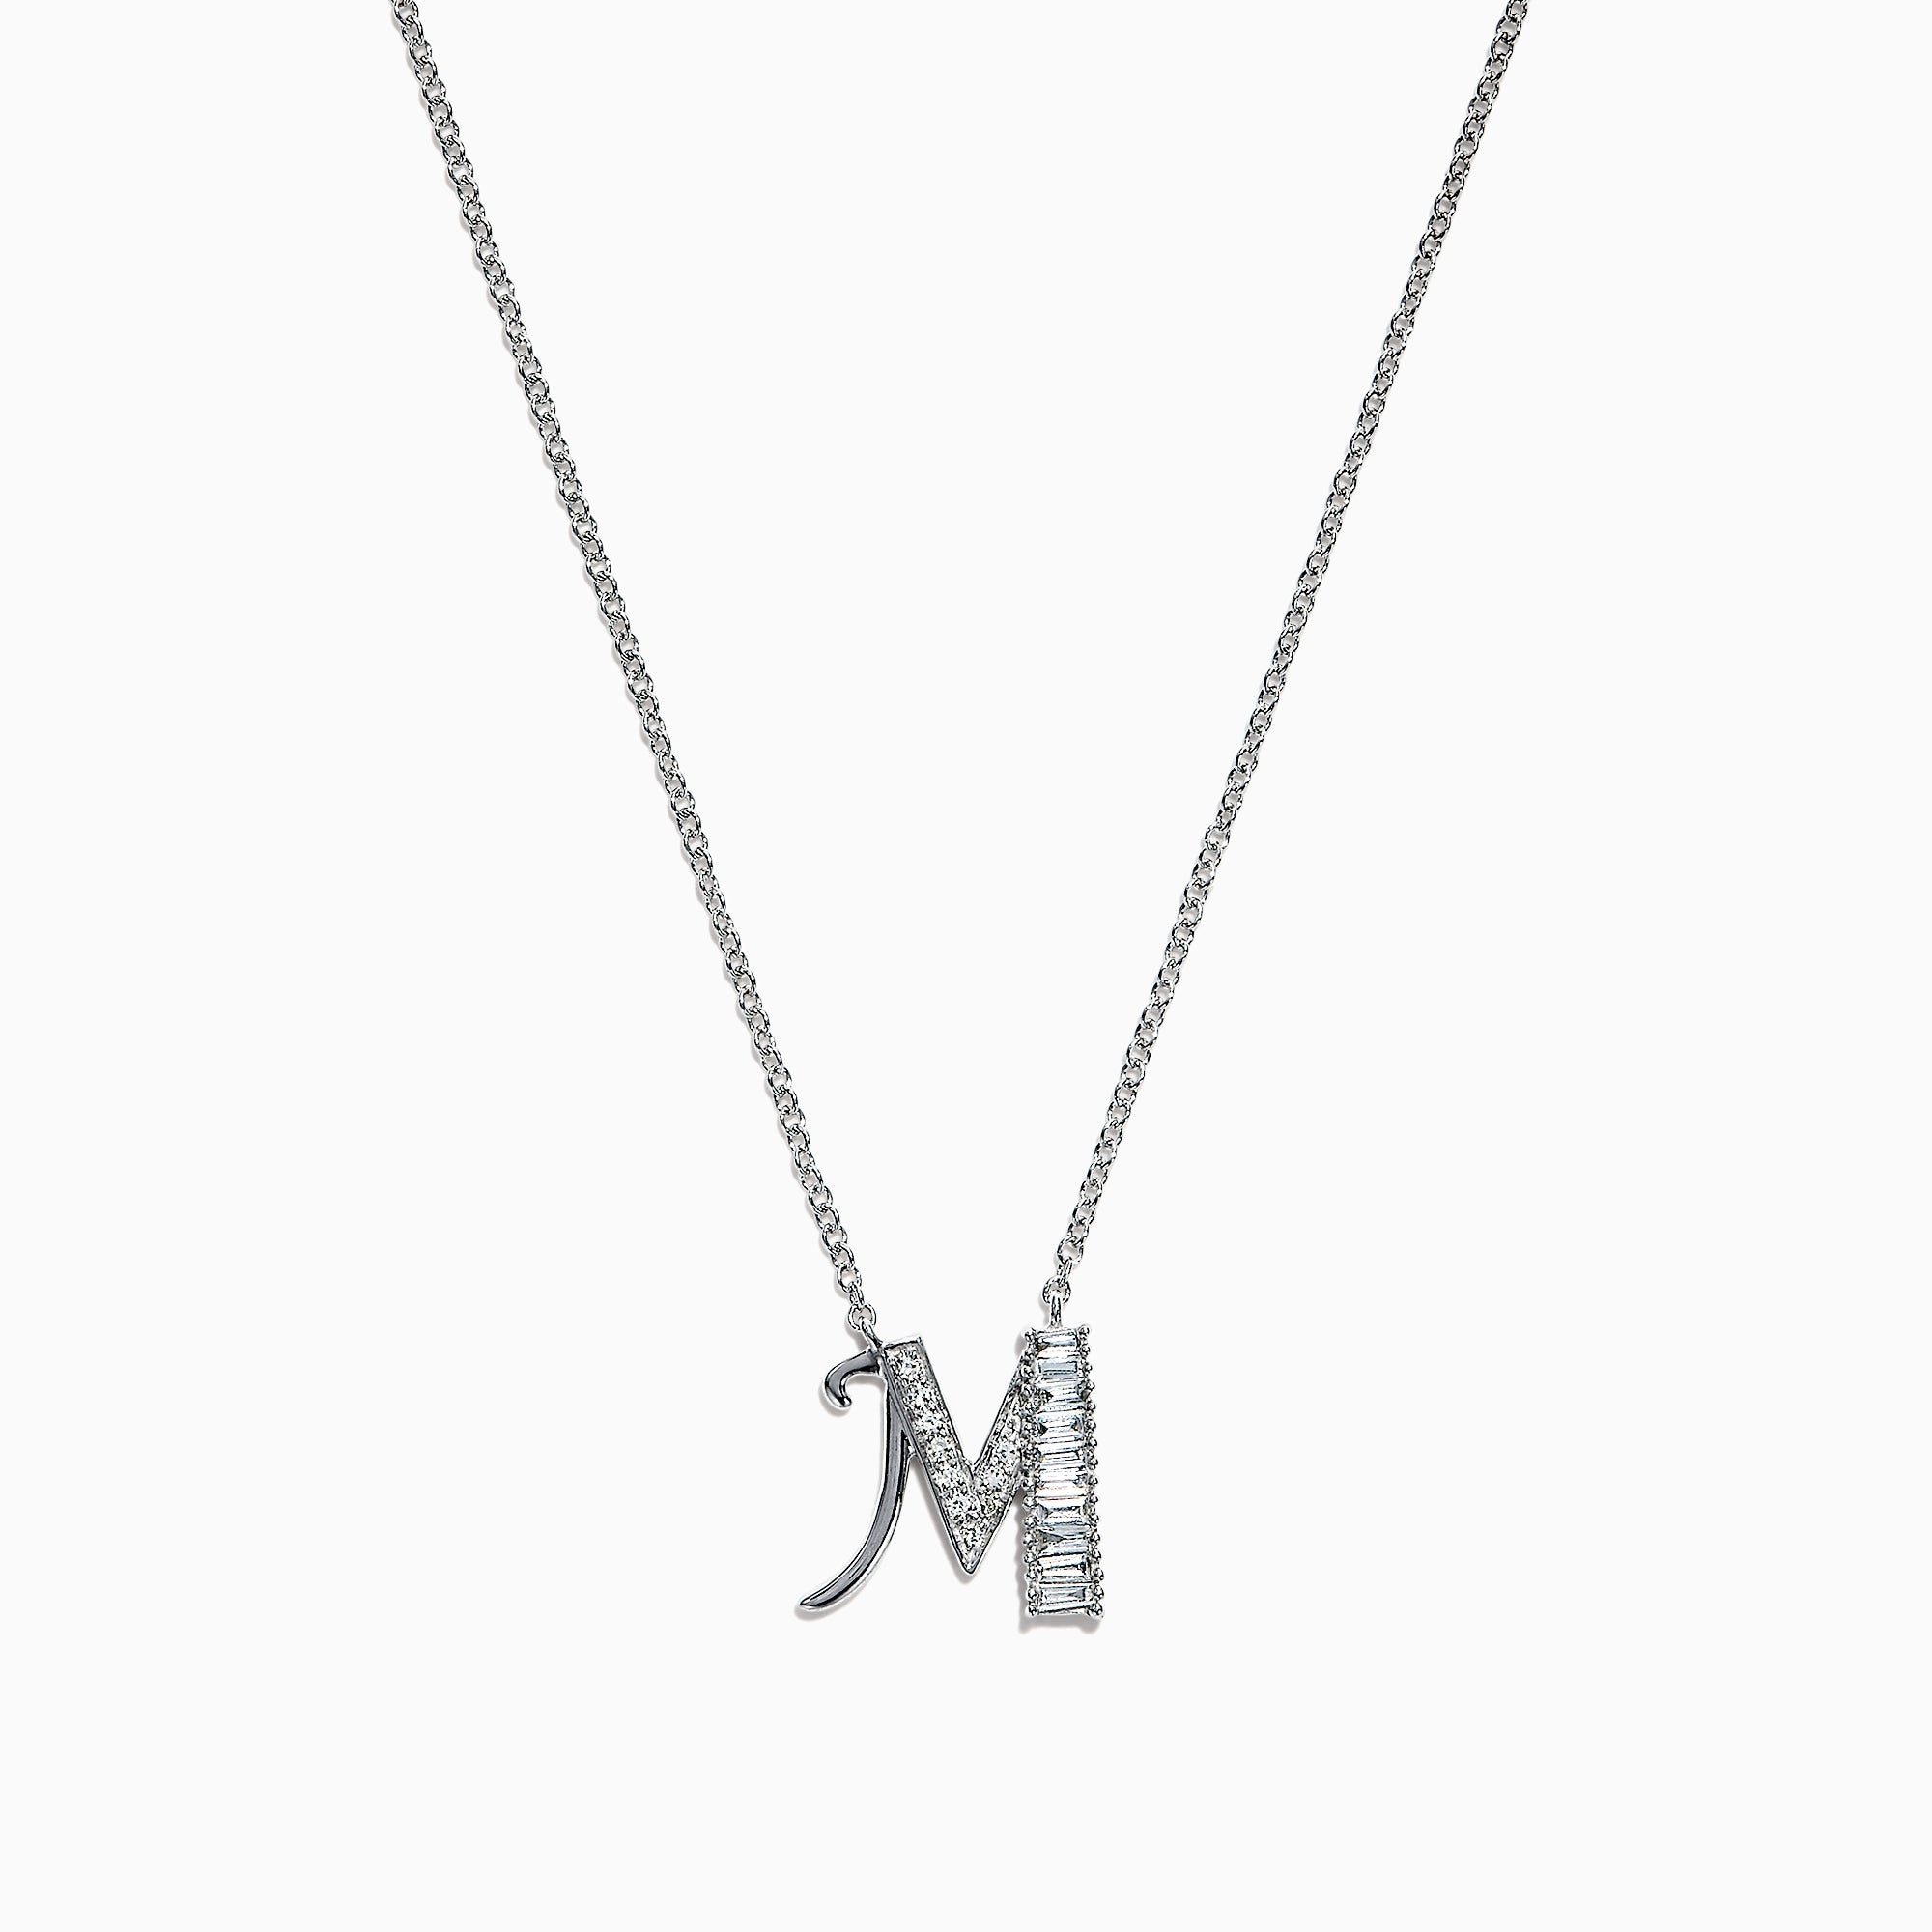 Effy Novelty 14K White Gold Diamond Initial Letter "M" Pendant, 0.20 TCW